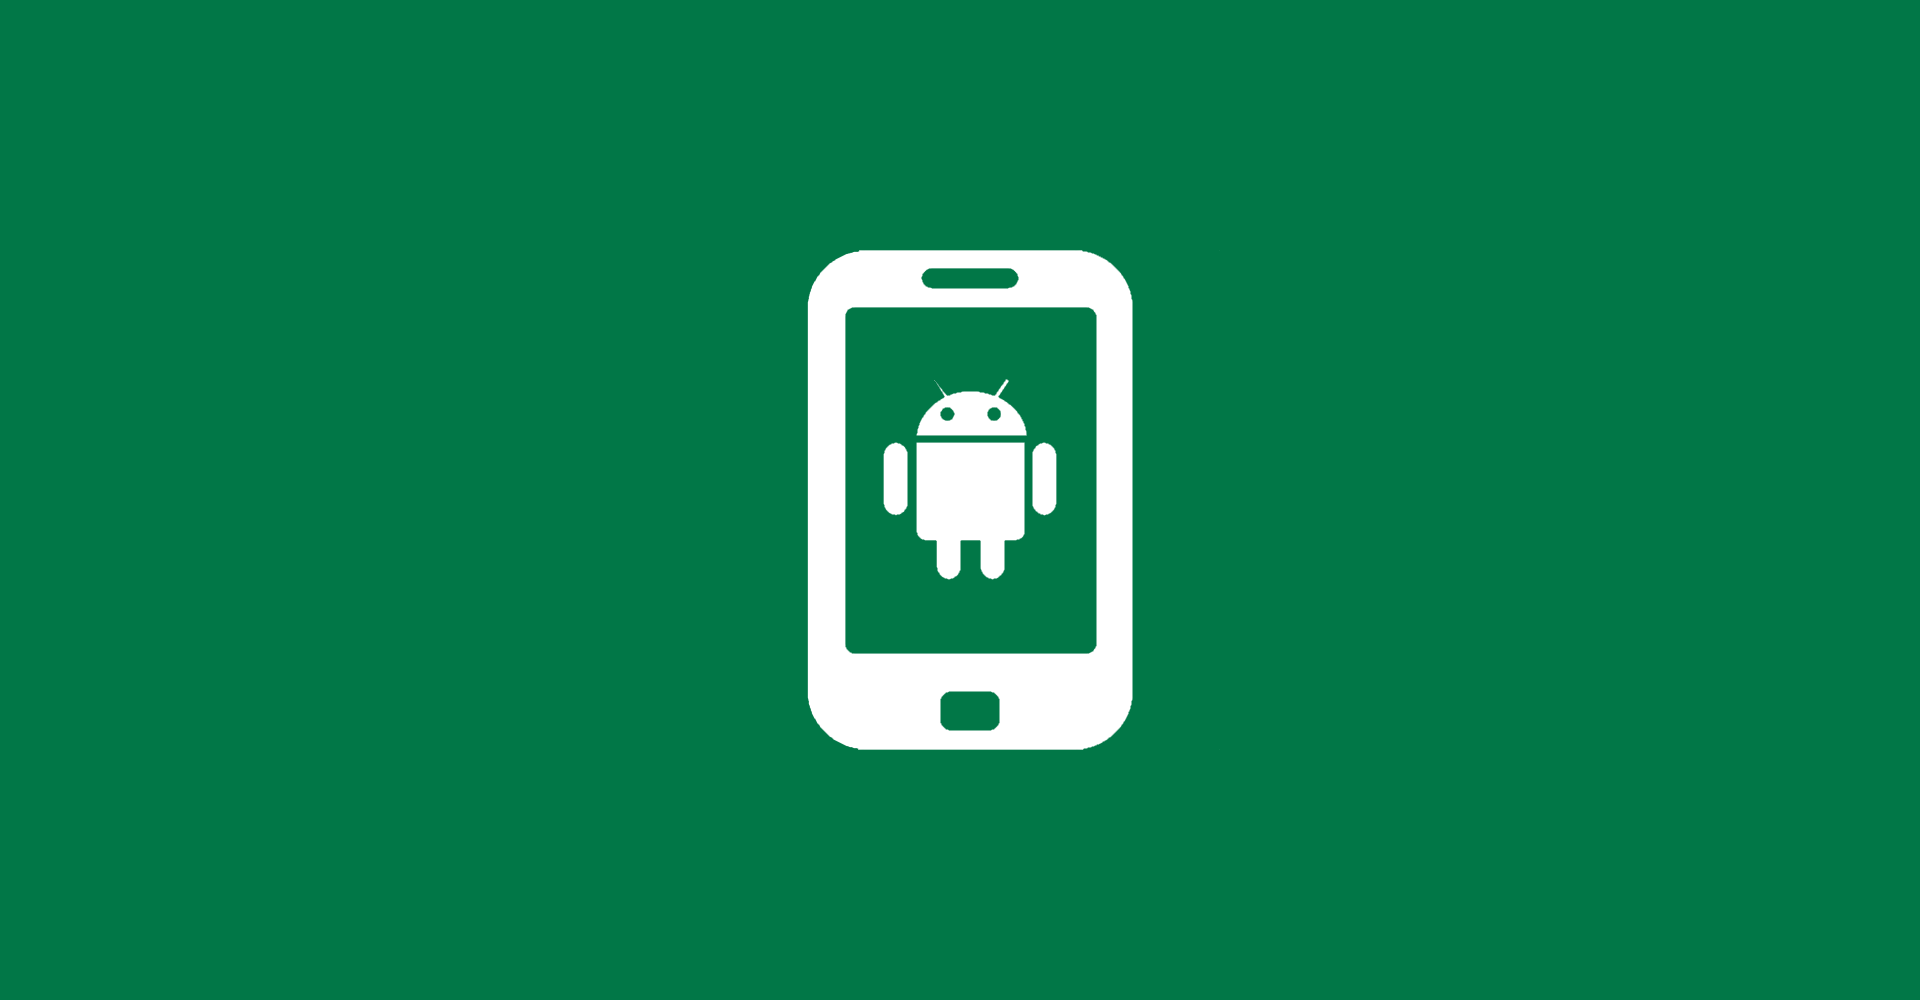 Deutschlands Kennzeichen: Meine erste Android-App